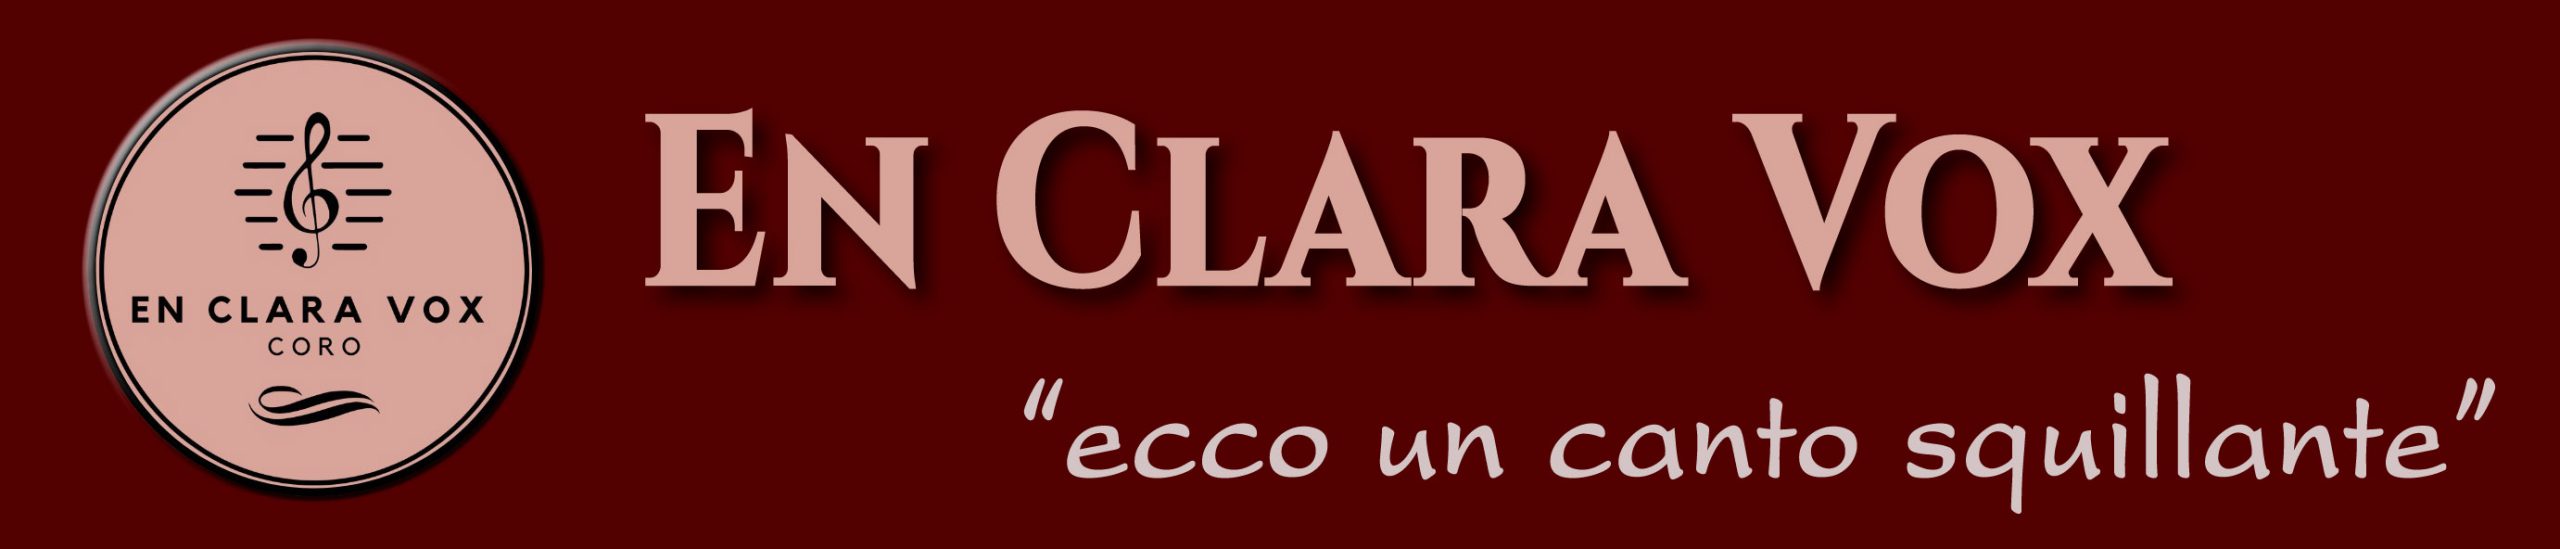 En Clara Vox